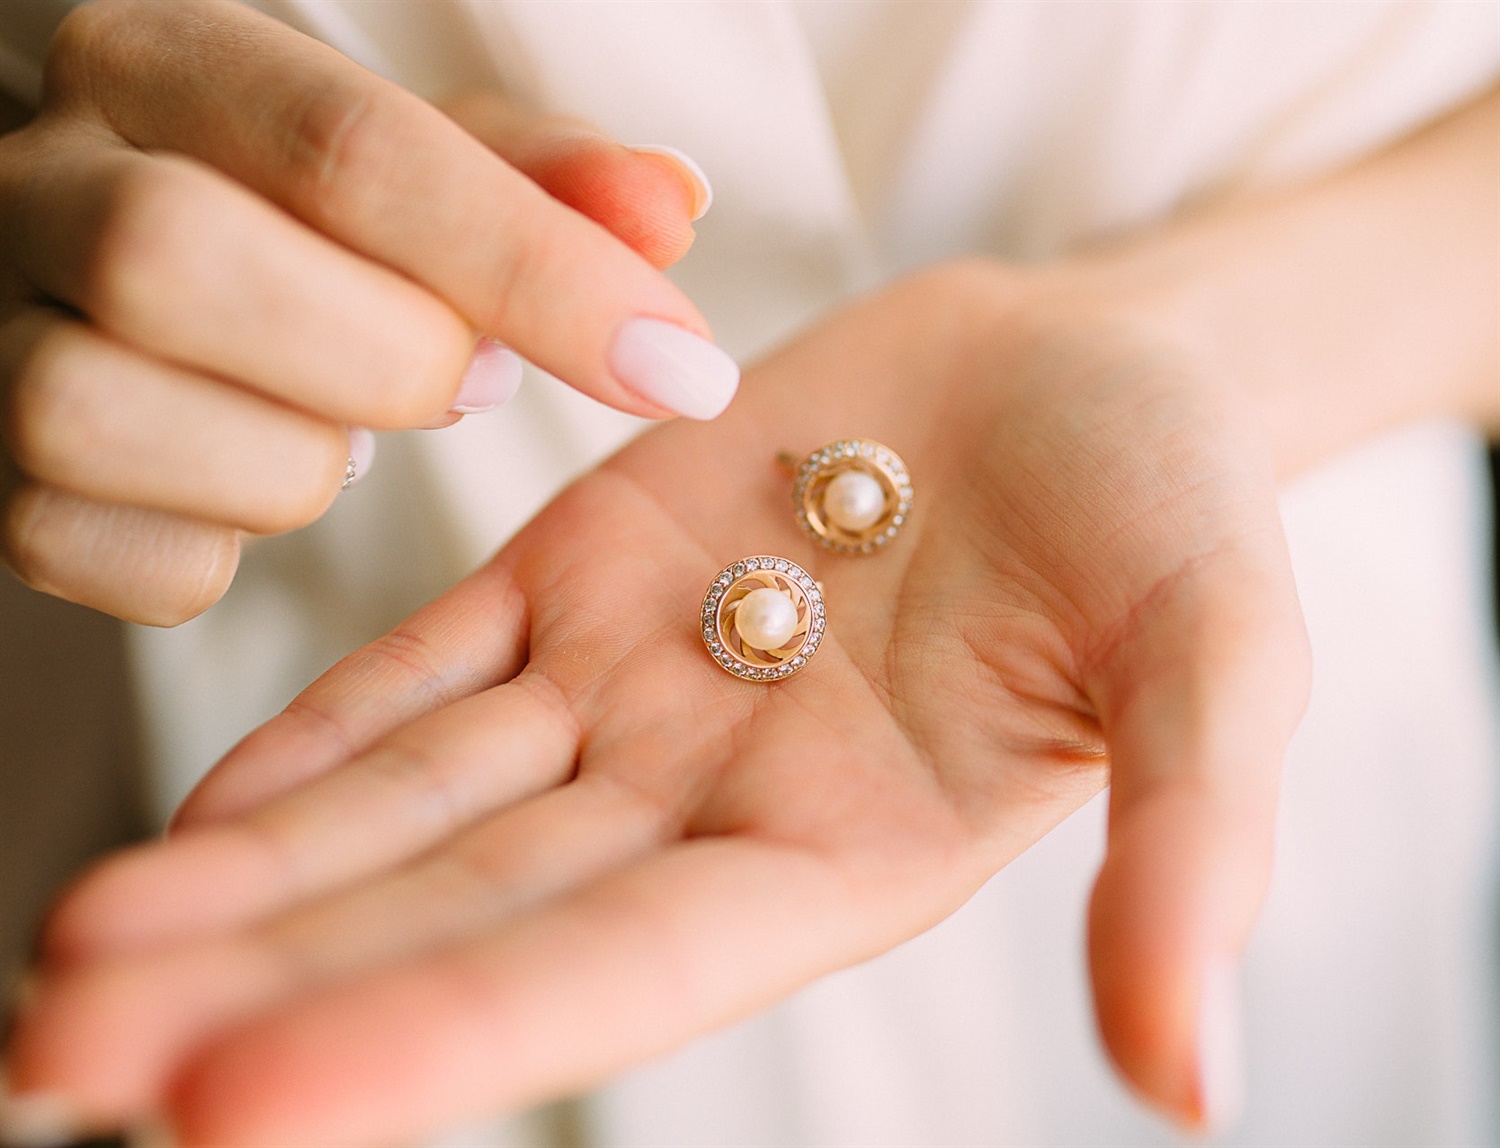 earrings in hand